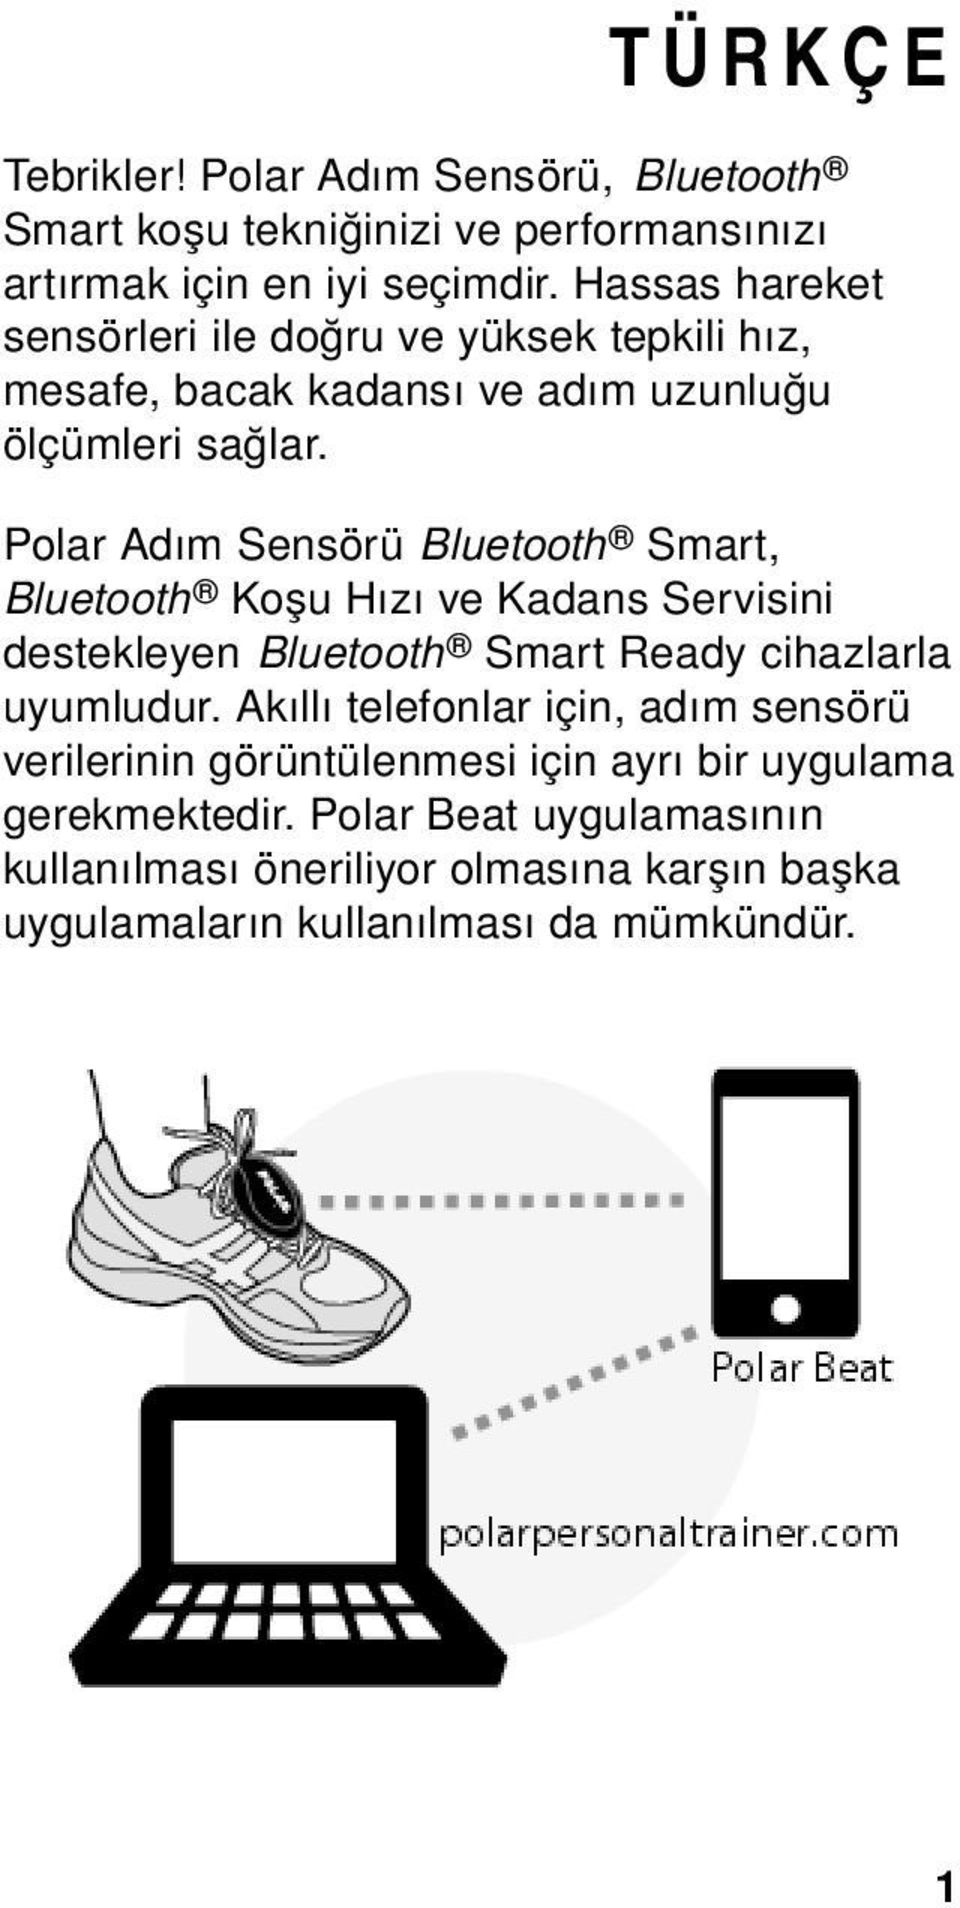 Polar Adım Sensörü Bluetooth Smart, Bluetooth Koşu Hızı ve Kadans Servisini destekleyen Bluetooth Smart Ready cihazlarla uyumludur.